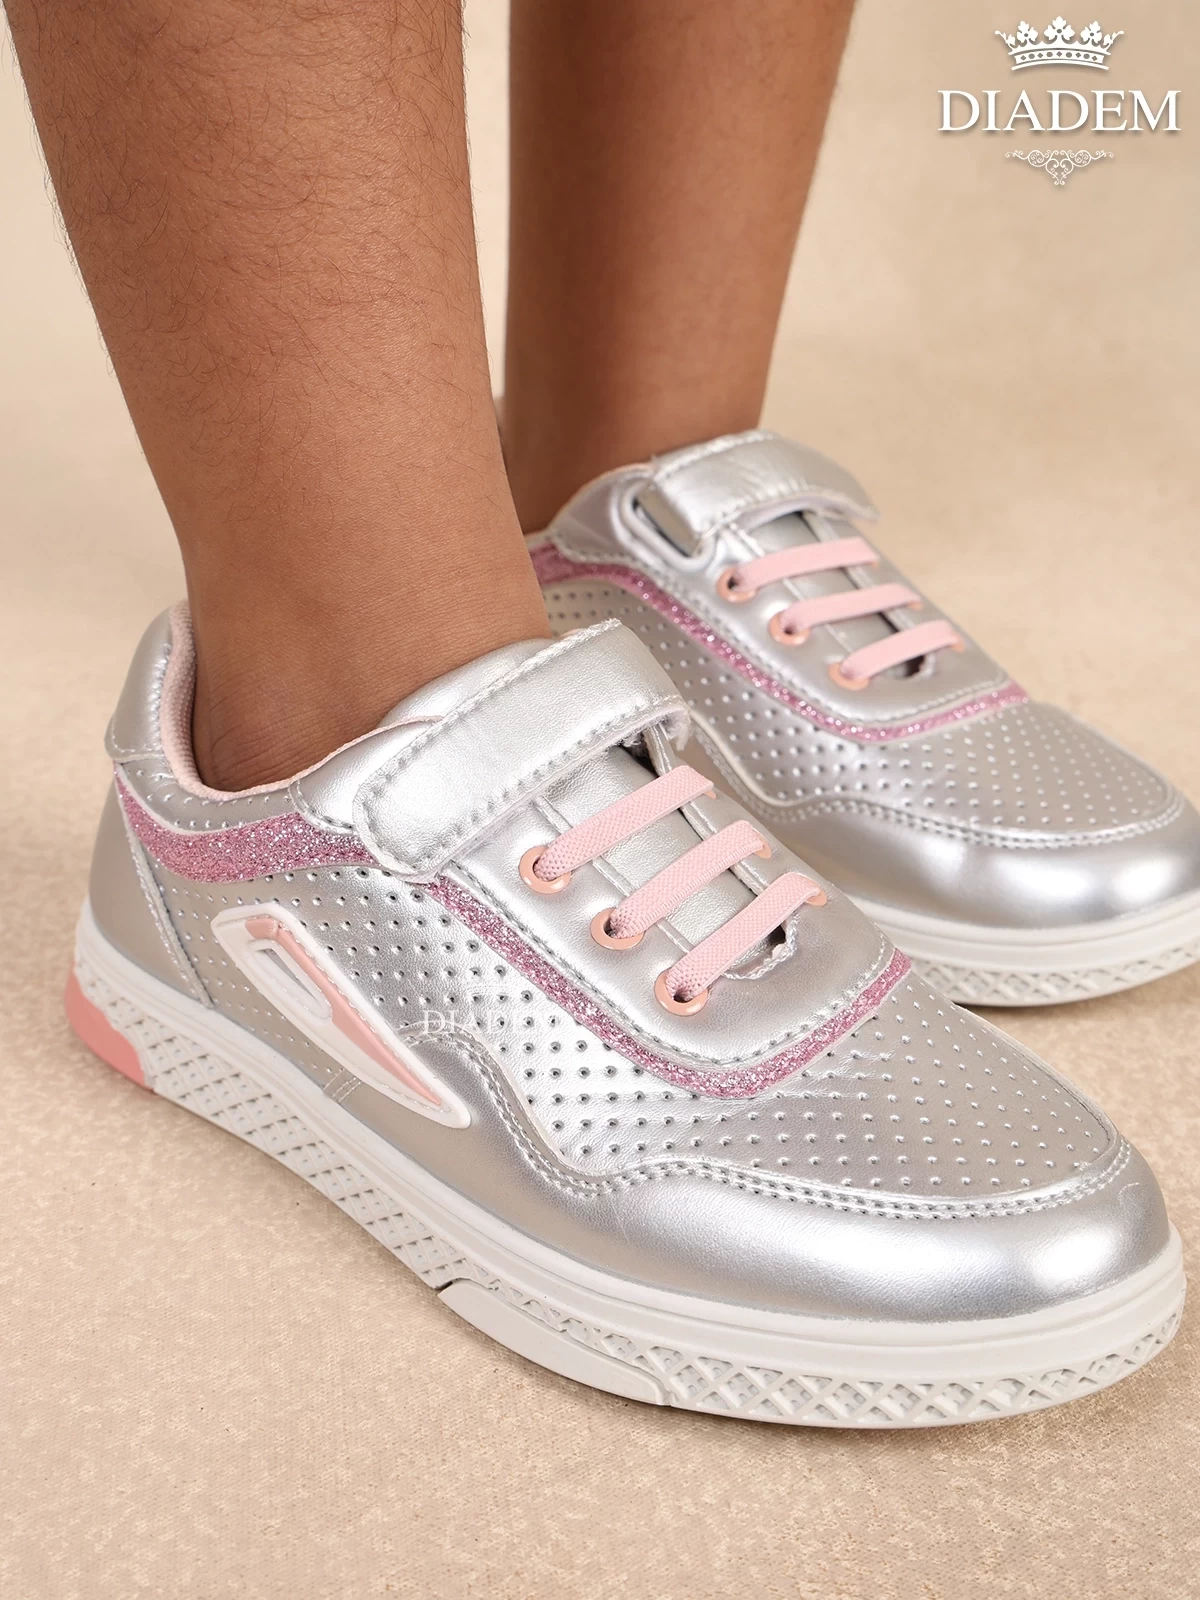 Fancy Silver Sneakers For Girls